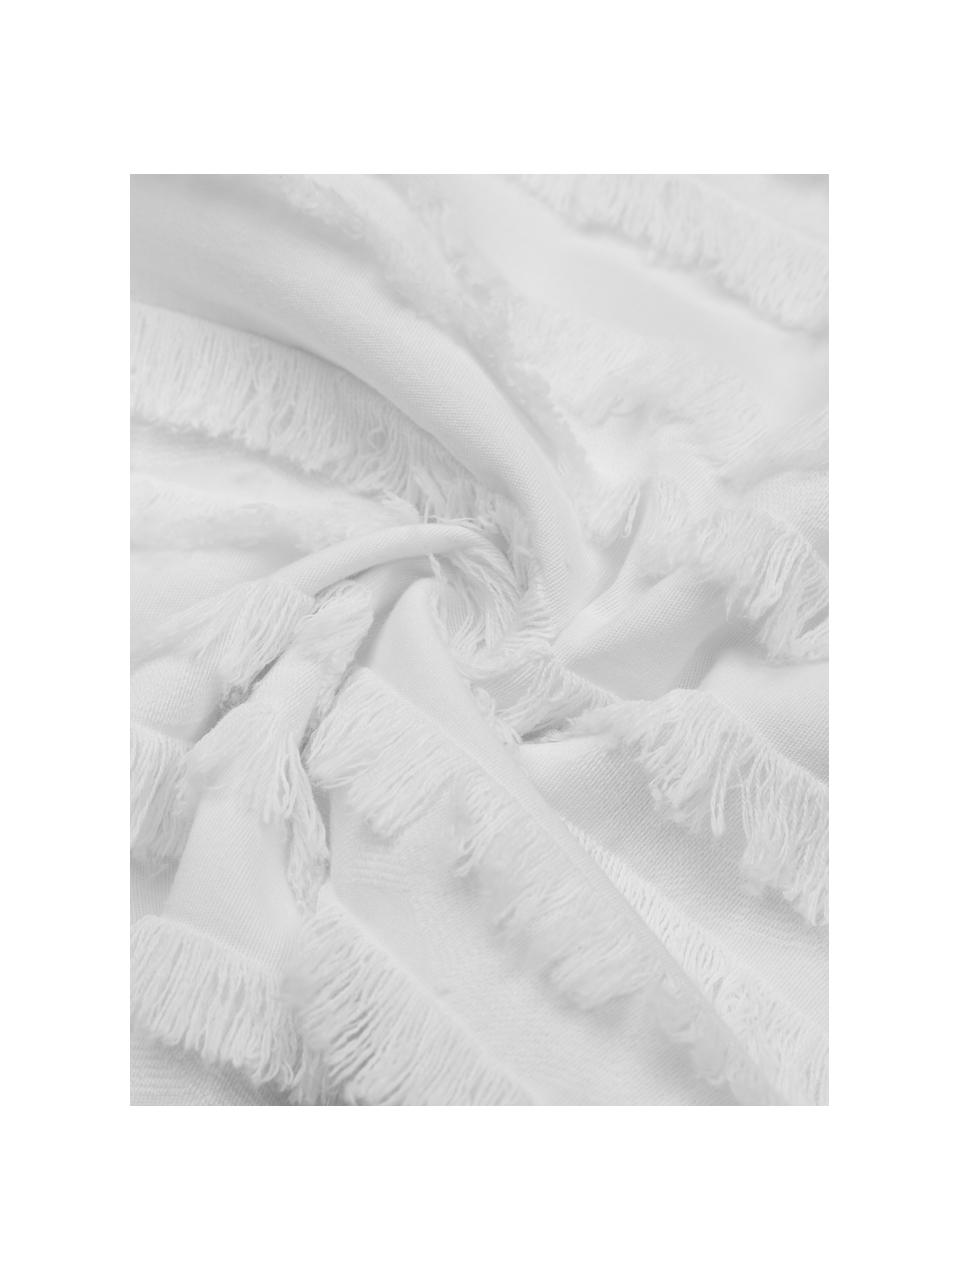 Kussenhoes Jessie in wit met decoratieve franjes, 88% katoen, 7% viscose, 5% linnen, Wit, B 30 x L 50 cm